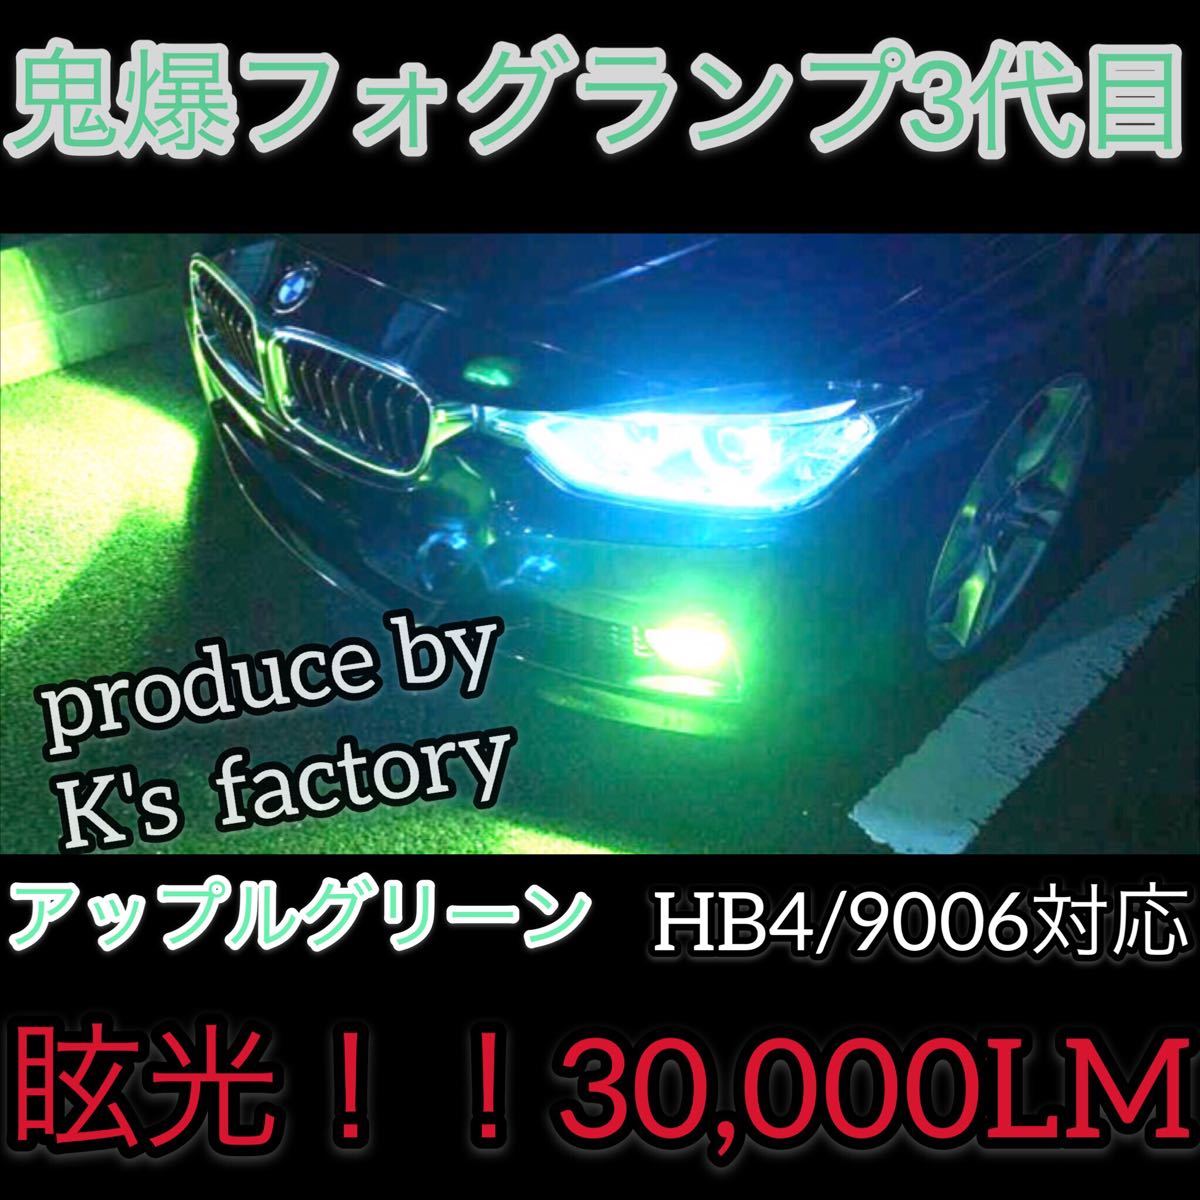 豪華で新しい HB4 9006 フォグランプ 緑色 アップルグリーン 32,000LM